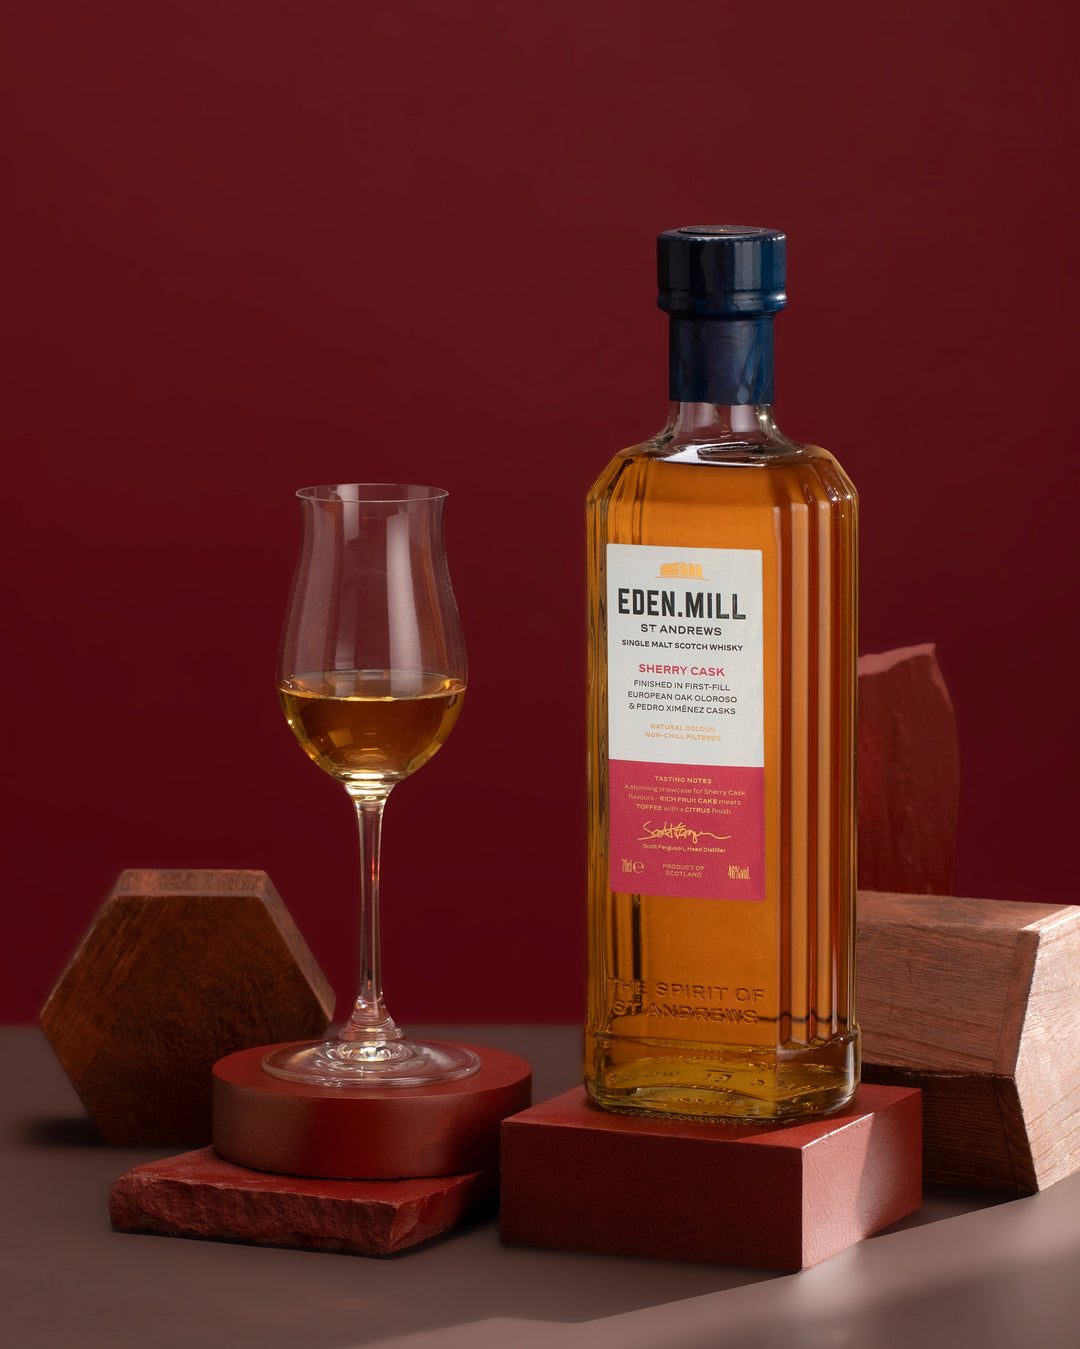 Sherry Cask Single Malt Scotch Whisky